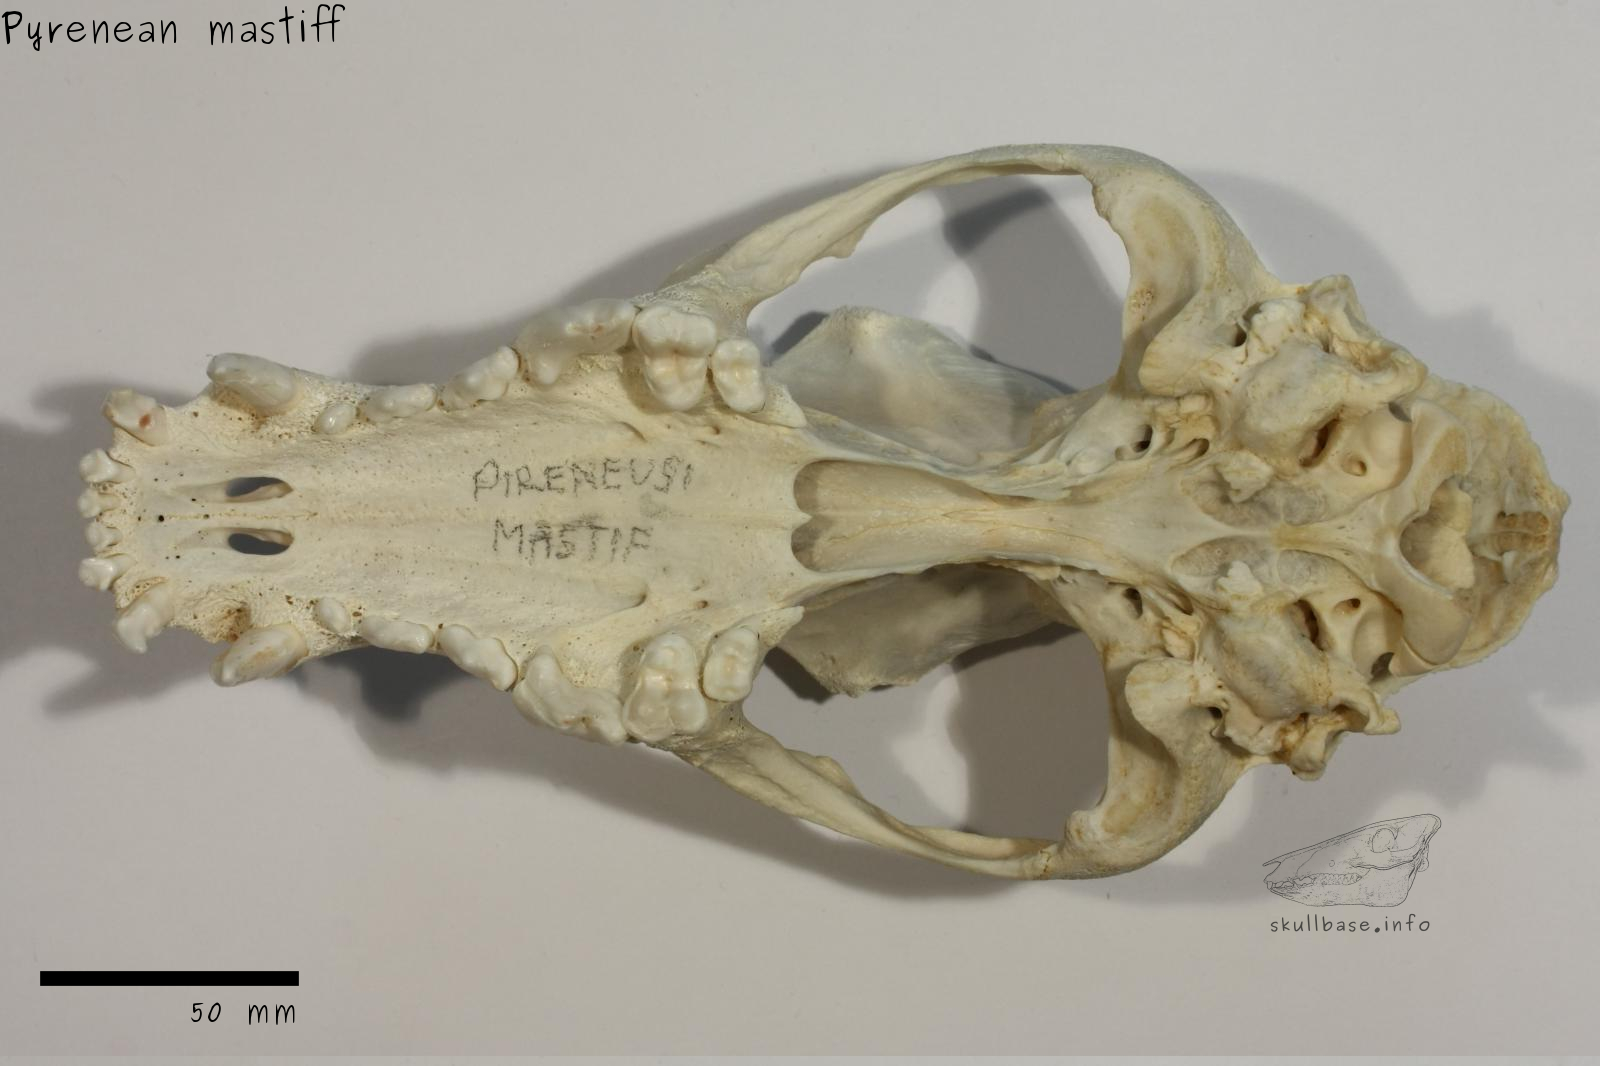 Pyrenean mastiff (Canis lupus familiaris) skull ventral view